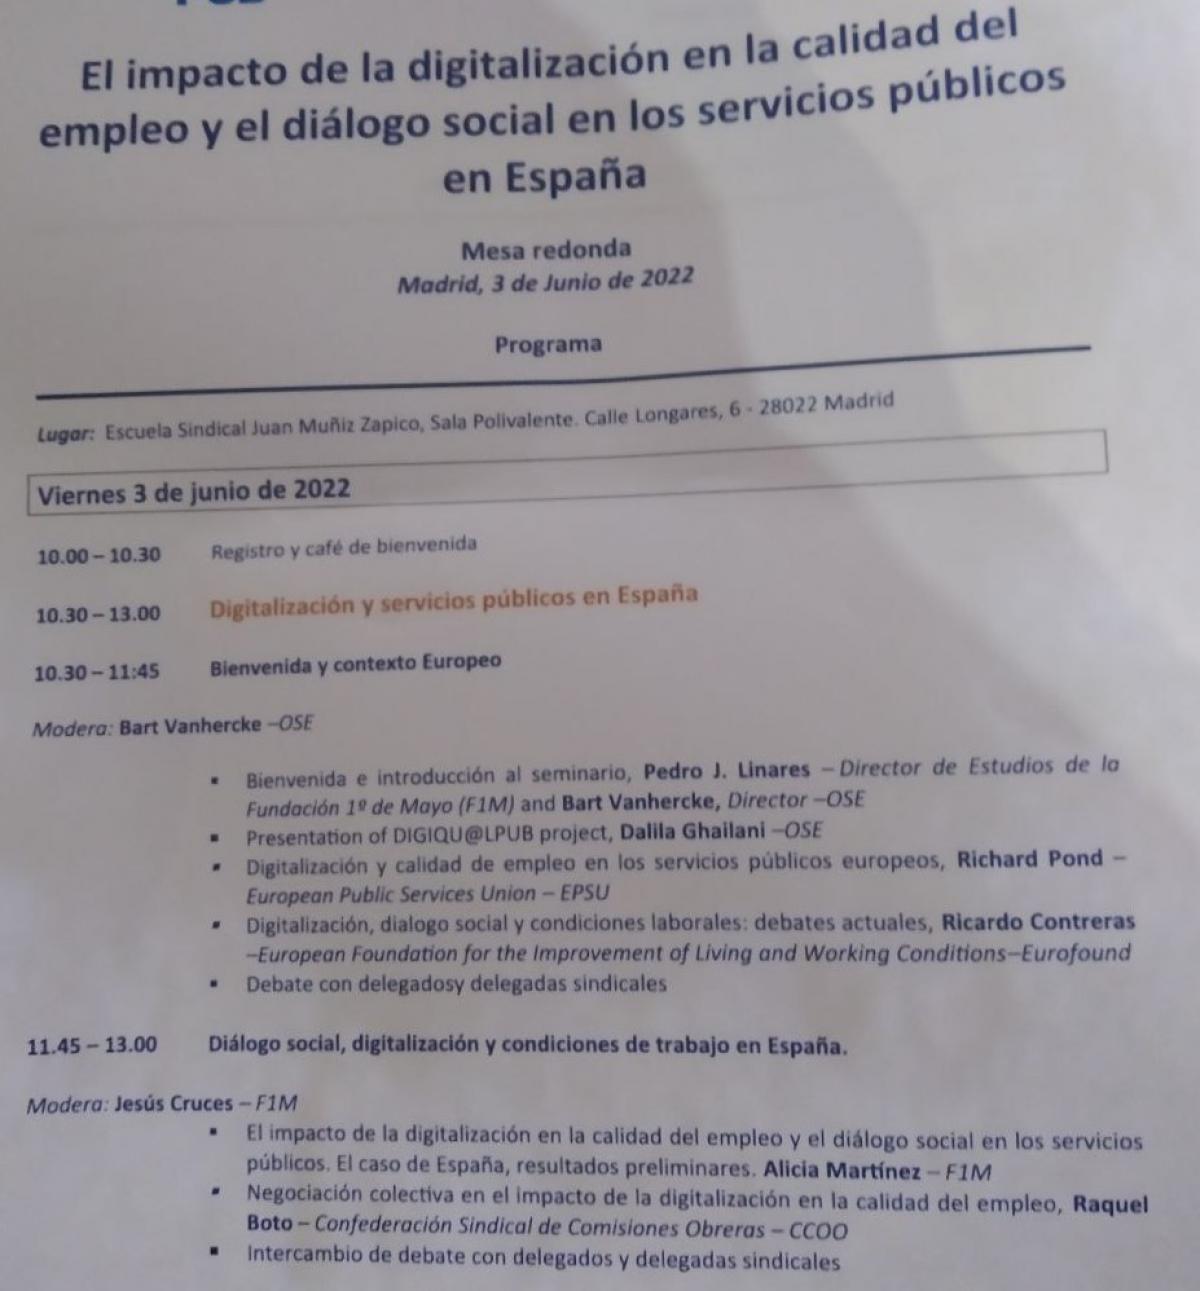 Jornada sobre el impacto de la digitalización en la calidad del empleo y diálogo social en los servicios públicos.